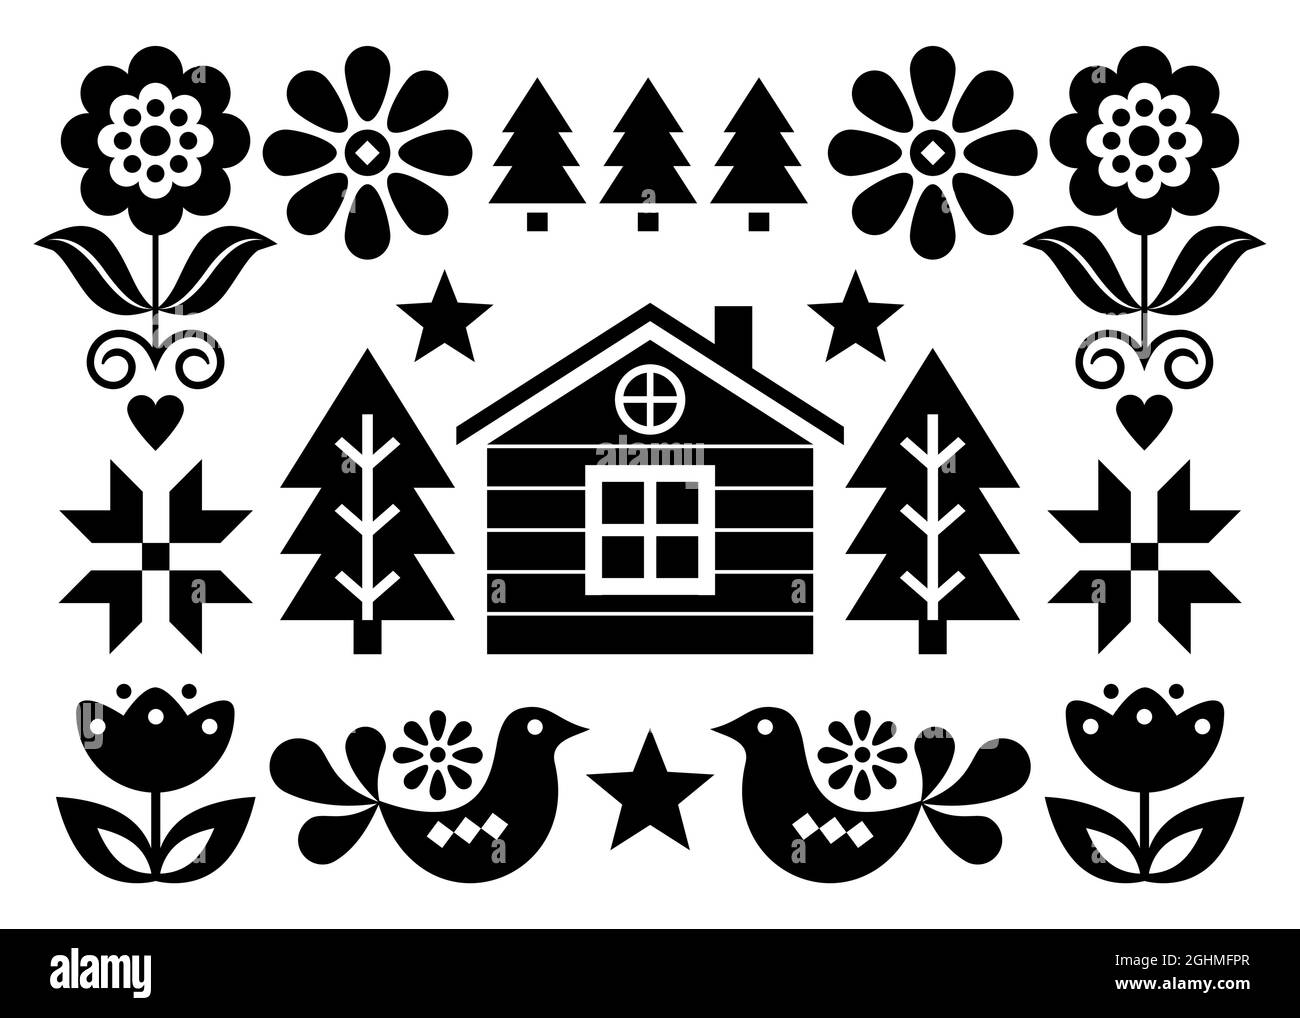 Weihnachten skandinavische Volkskunst Vektor-Grußkarten-Design im 5x7-Format mit Weihnachtsbäumen, Vögeln, Blumen und finnischem Haus - schwarz und weiß Stock Vektor